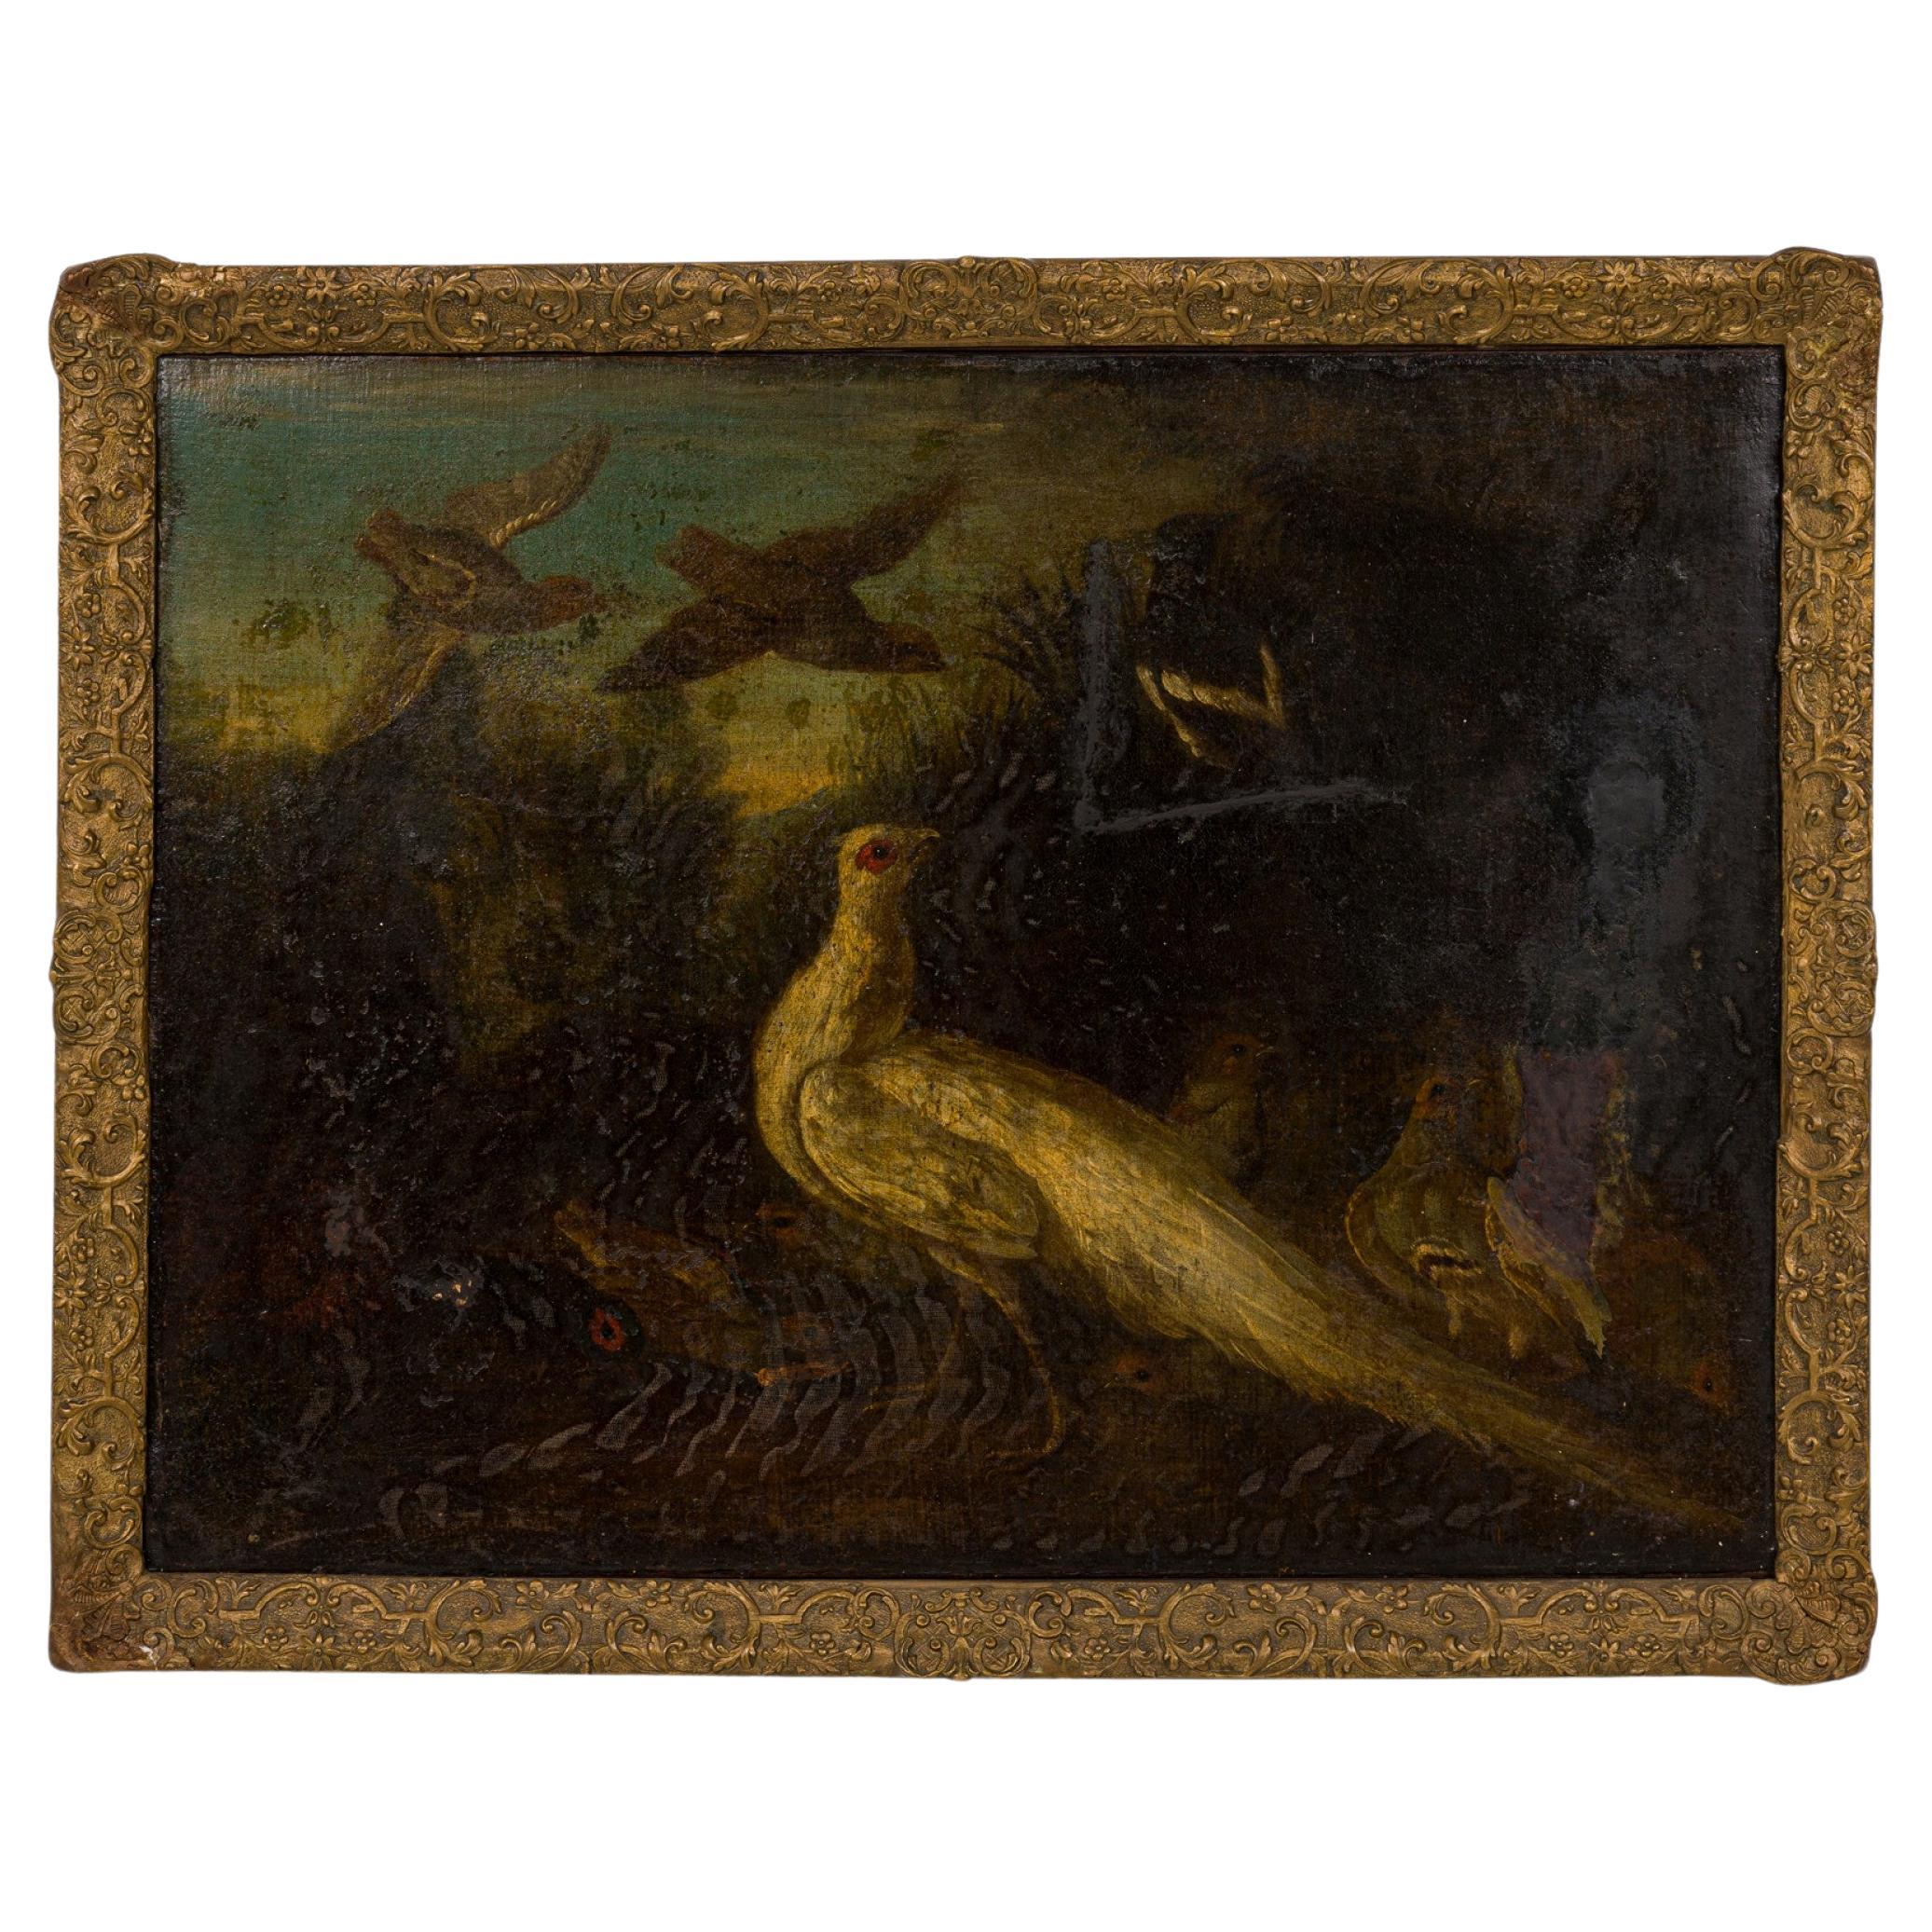 Peinture à l'huile italienne de style Renaissance représentant un paon blanc et d'autres oiseaux dans un cadre